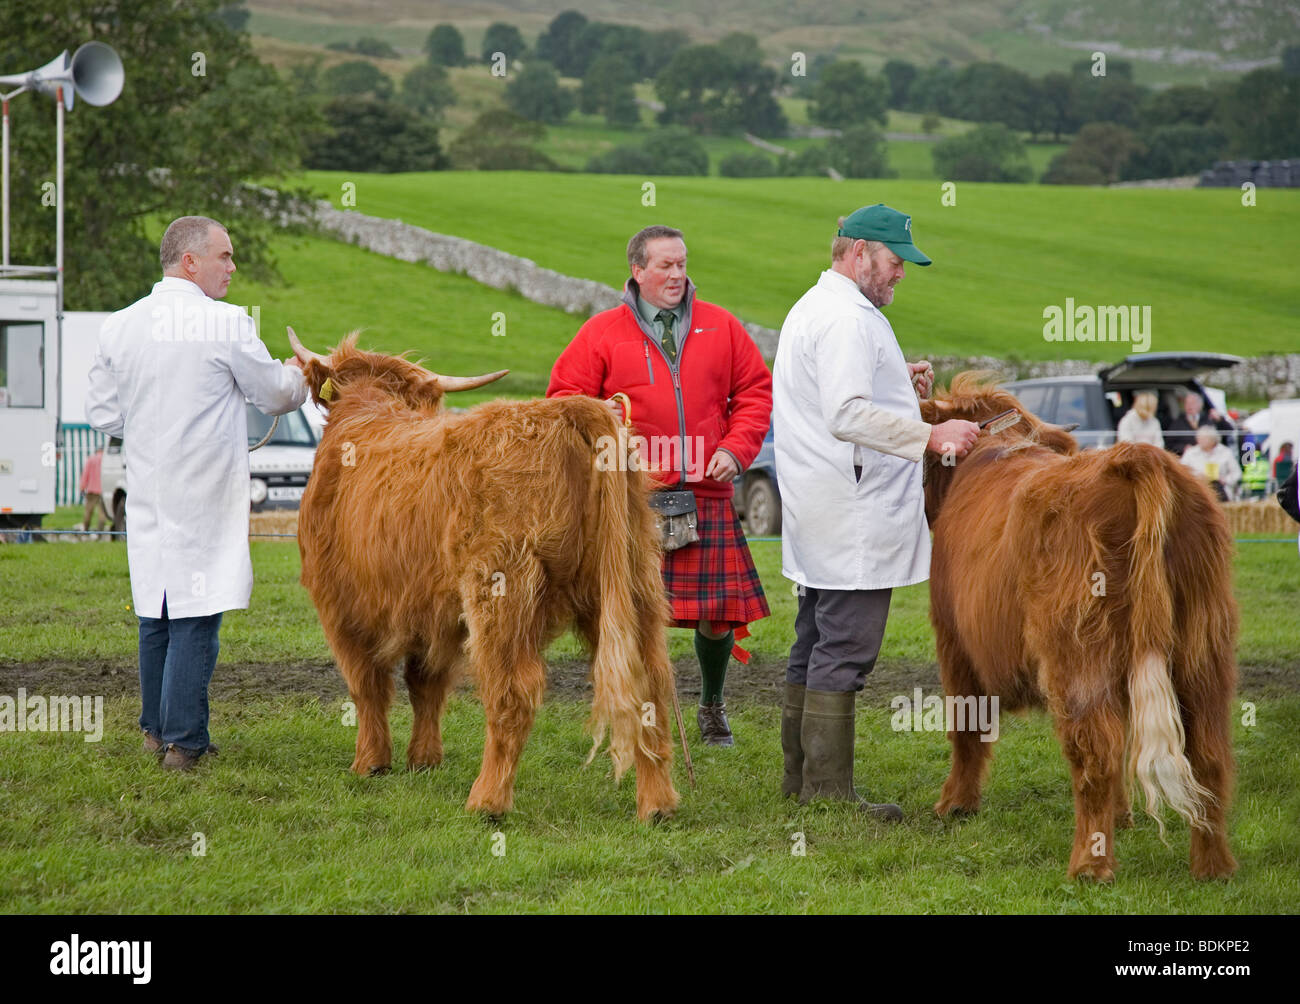 Highland cattle étant jugé par un homme en kilt en tartan écossais, à l'agriculture et de l'agriculture Malham, Yorkshire Dales Banque D'Images